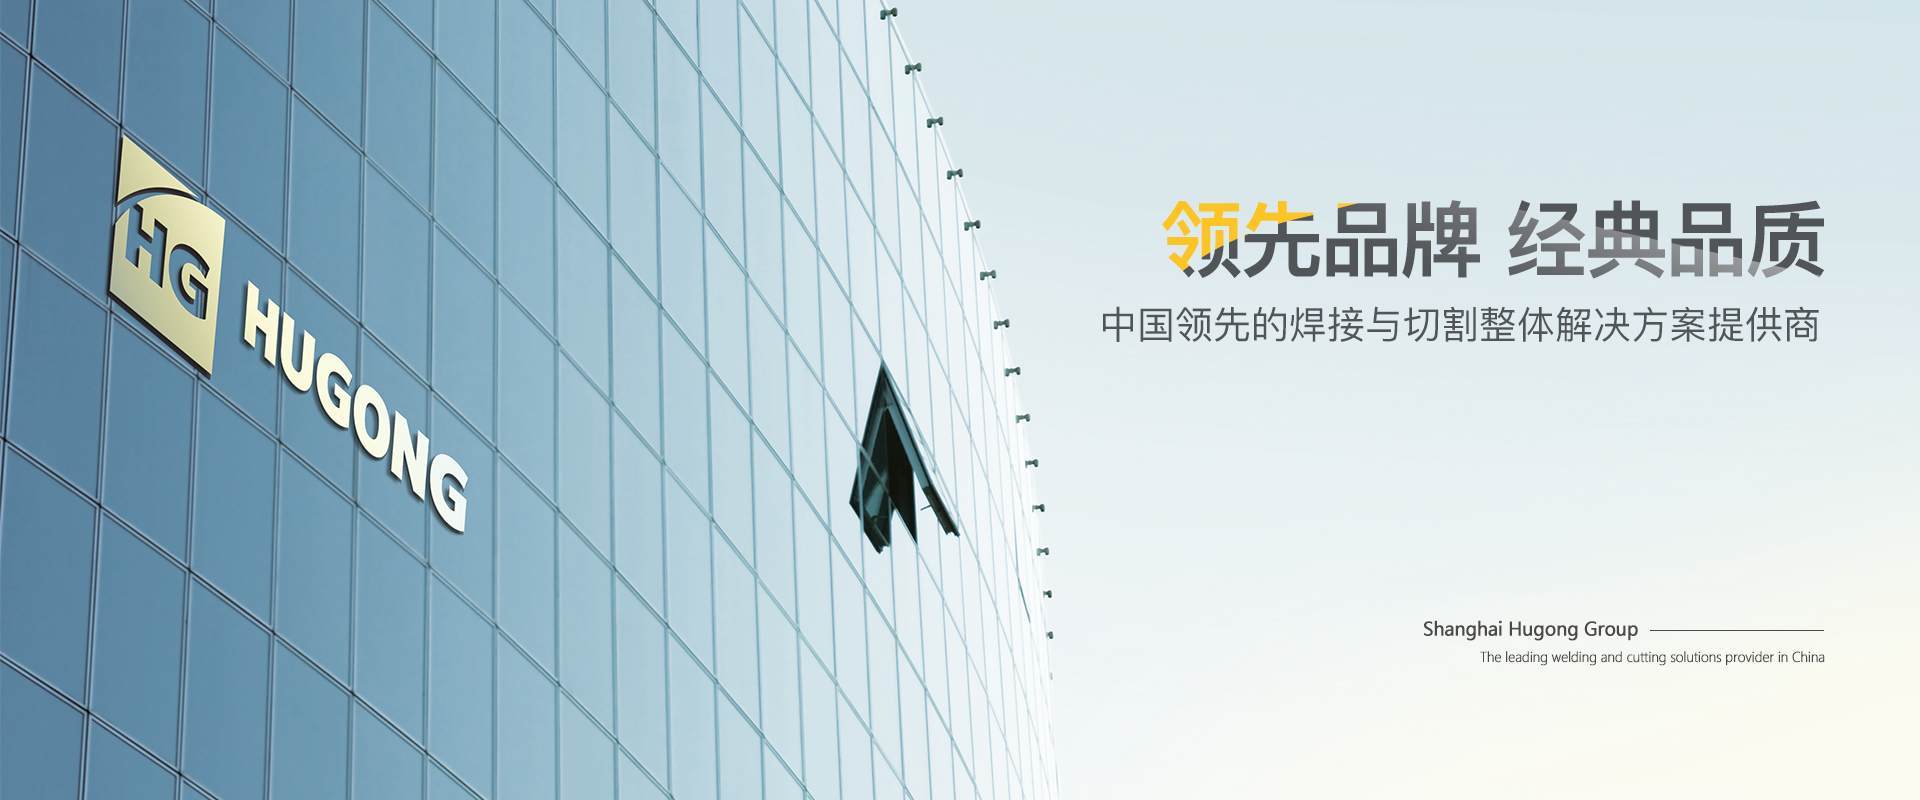 澳门挂牌正版挂牌完整挂牌-中国领先的焊接与切割整体解决方案提供商